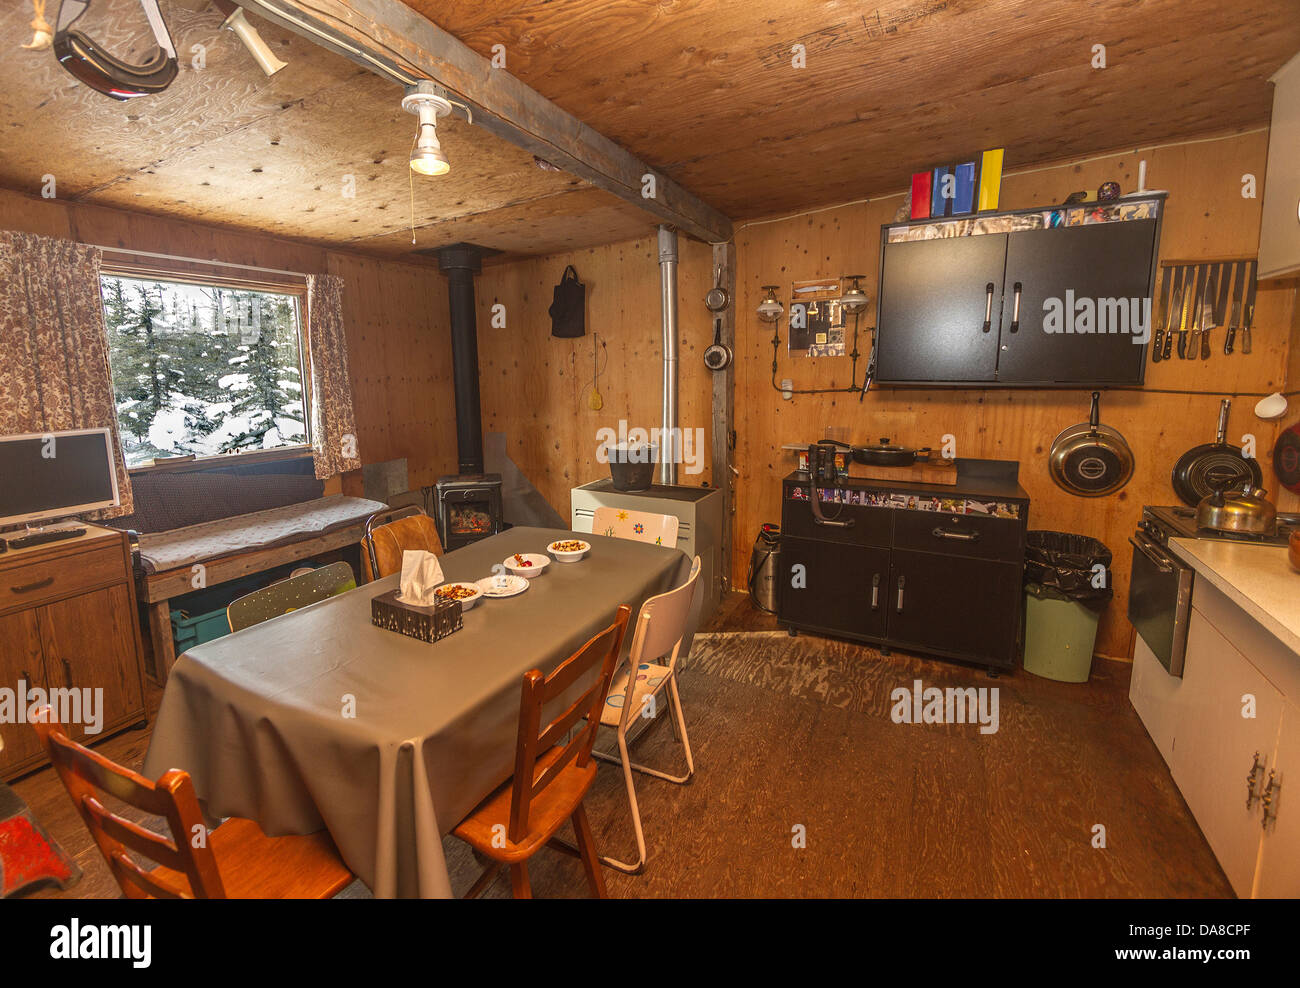 Typische, einfache Hütte in der arktischen Tundra Wildnis, ausgestattet mit Holzofen und Generator angetrieben Elektrizität verwendet Stockfoto